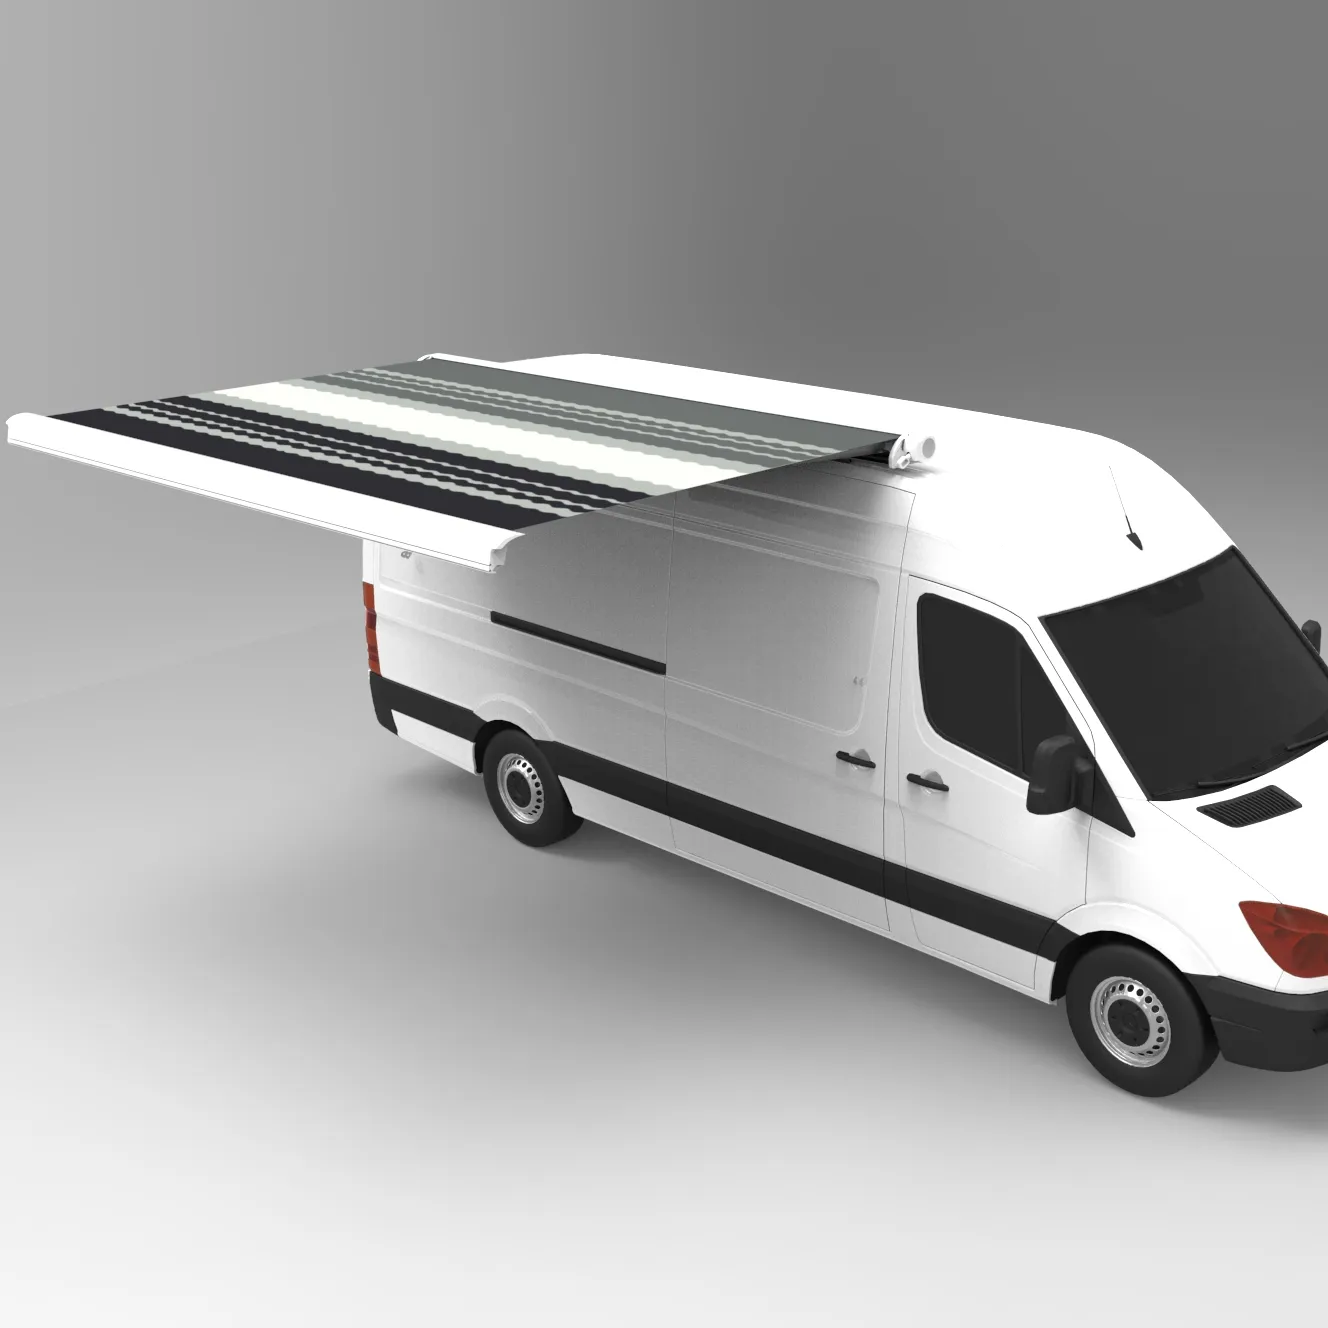 Awnlux RV van auvent Camping-car auvent cassette complète auvent rétractable manuel extérieur pour camping-car camping-car